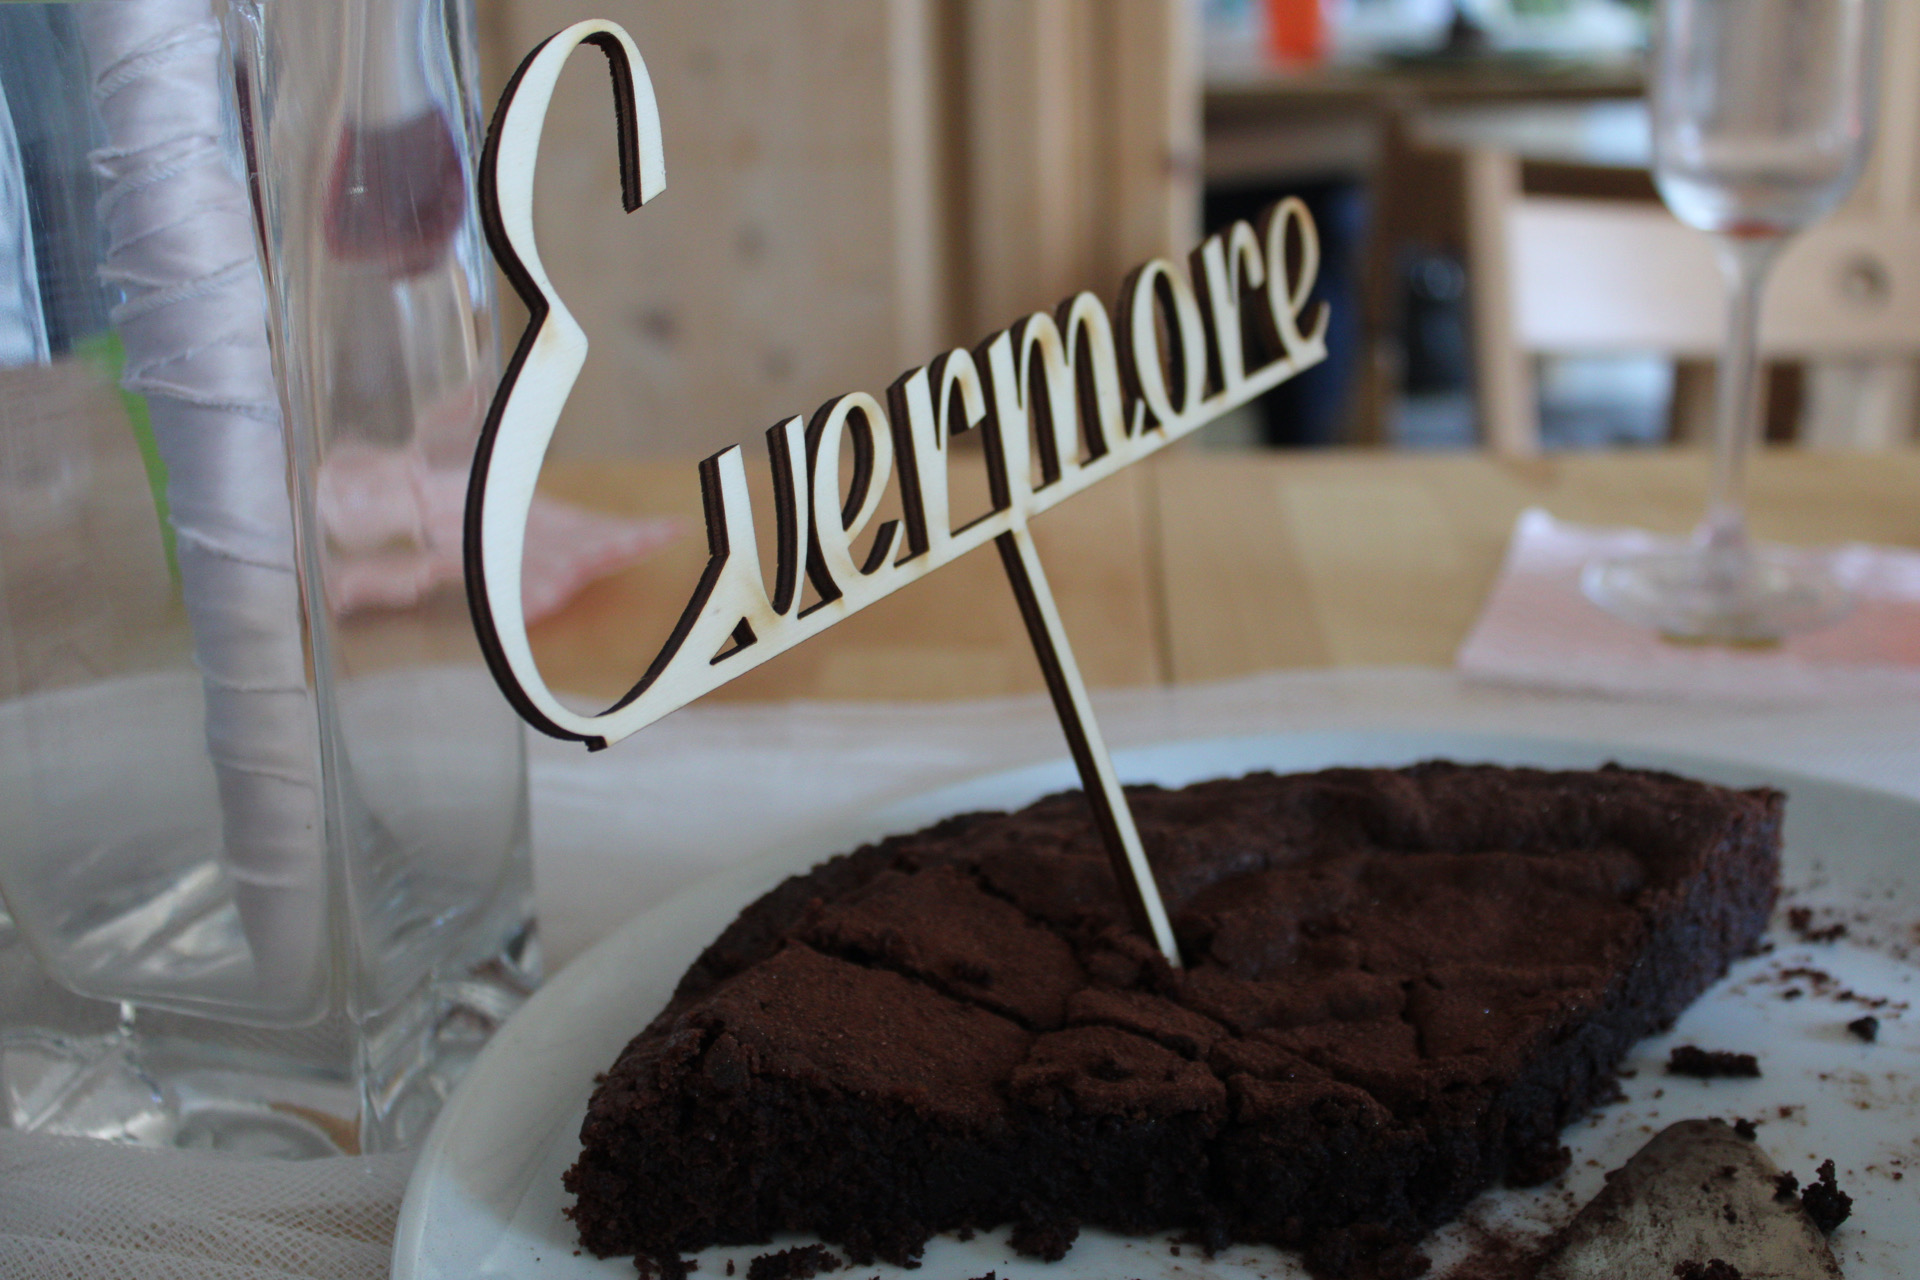 Coronahochzeit: Ein Kuchen mit einem Cake-Topper auf dem Evermore steht